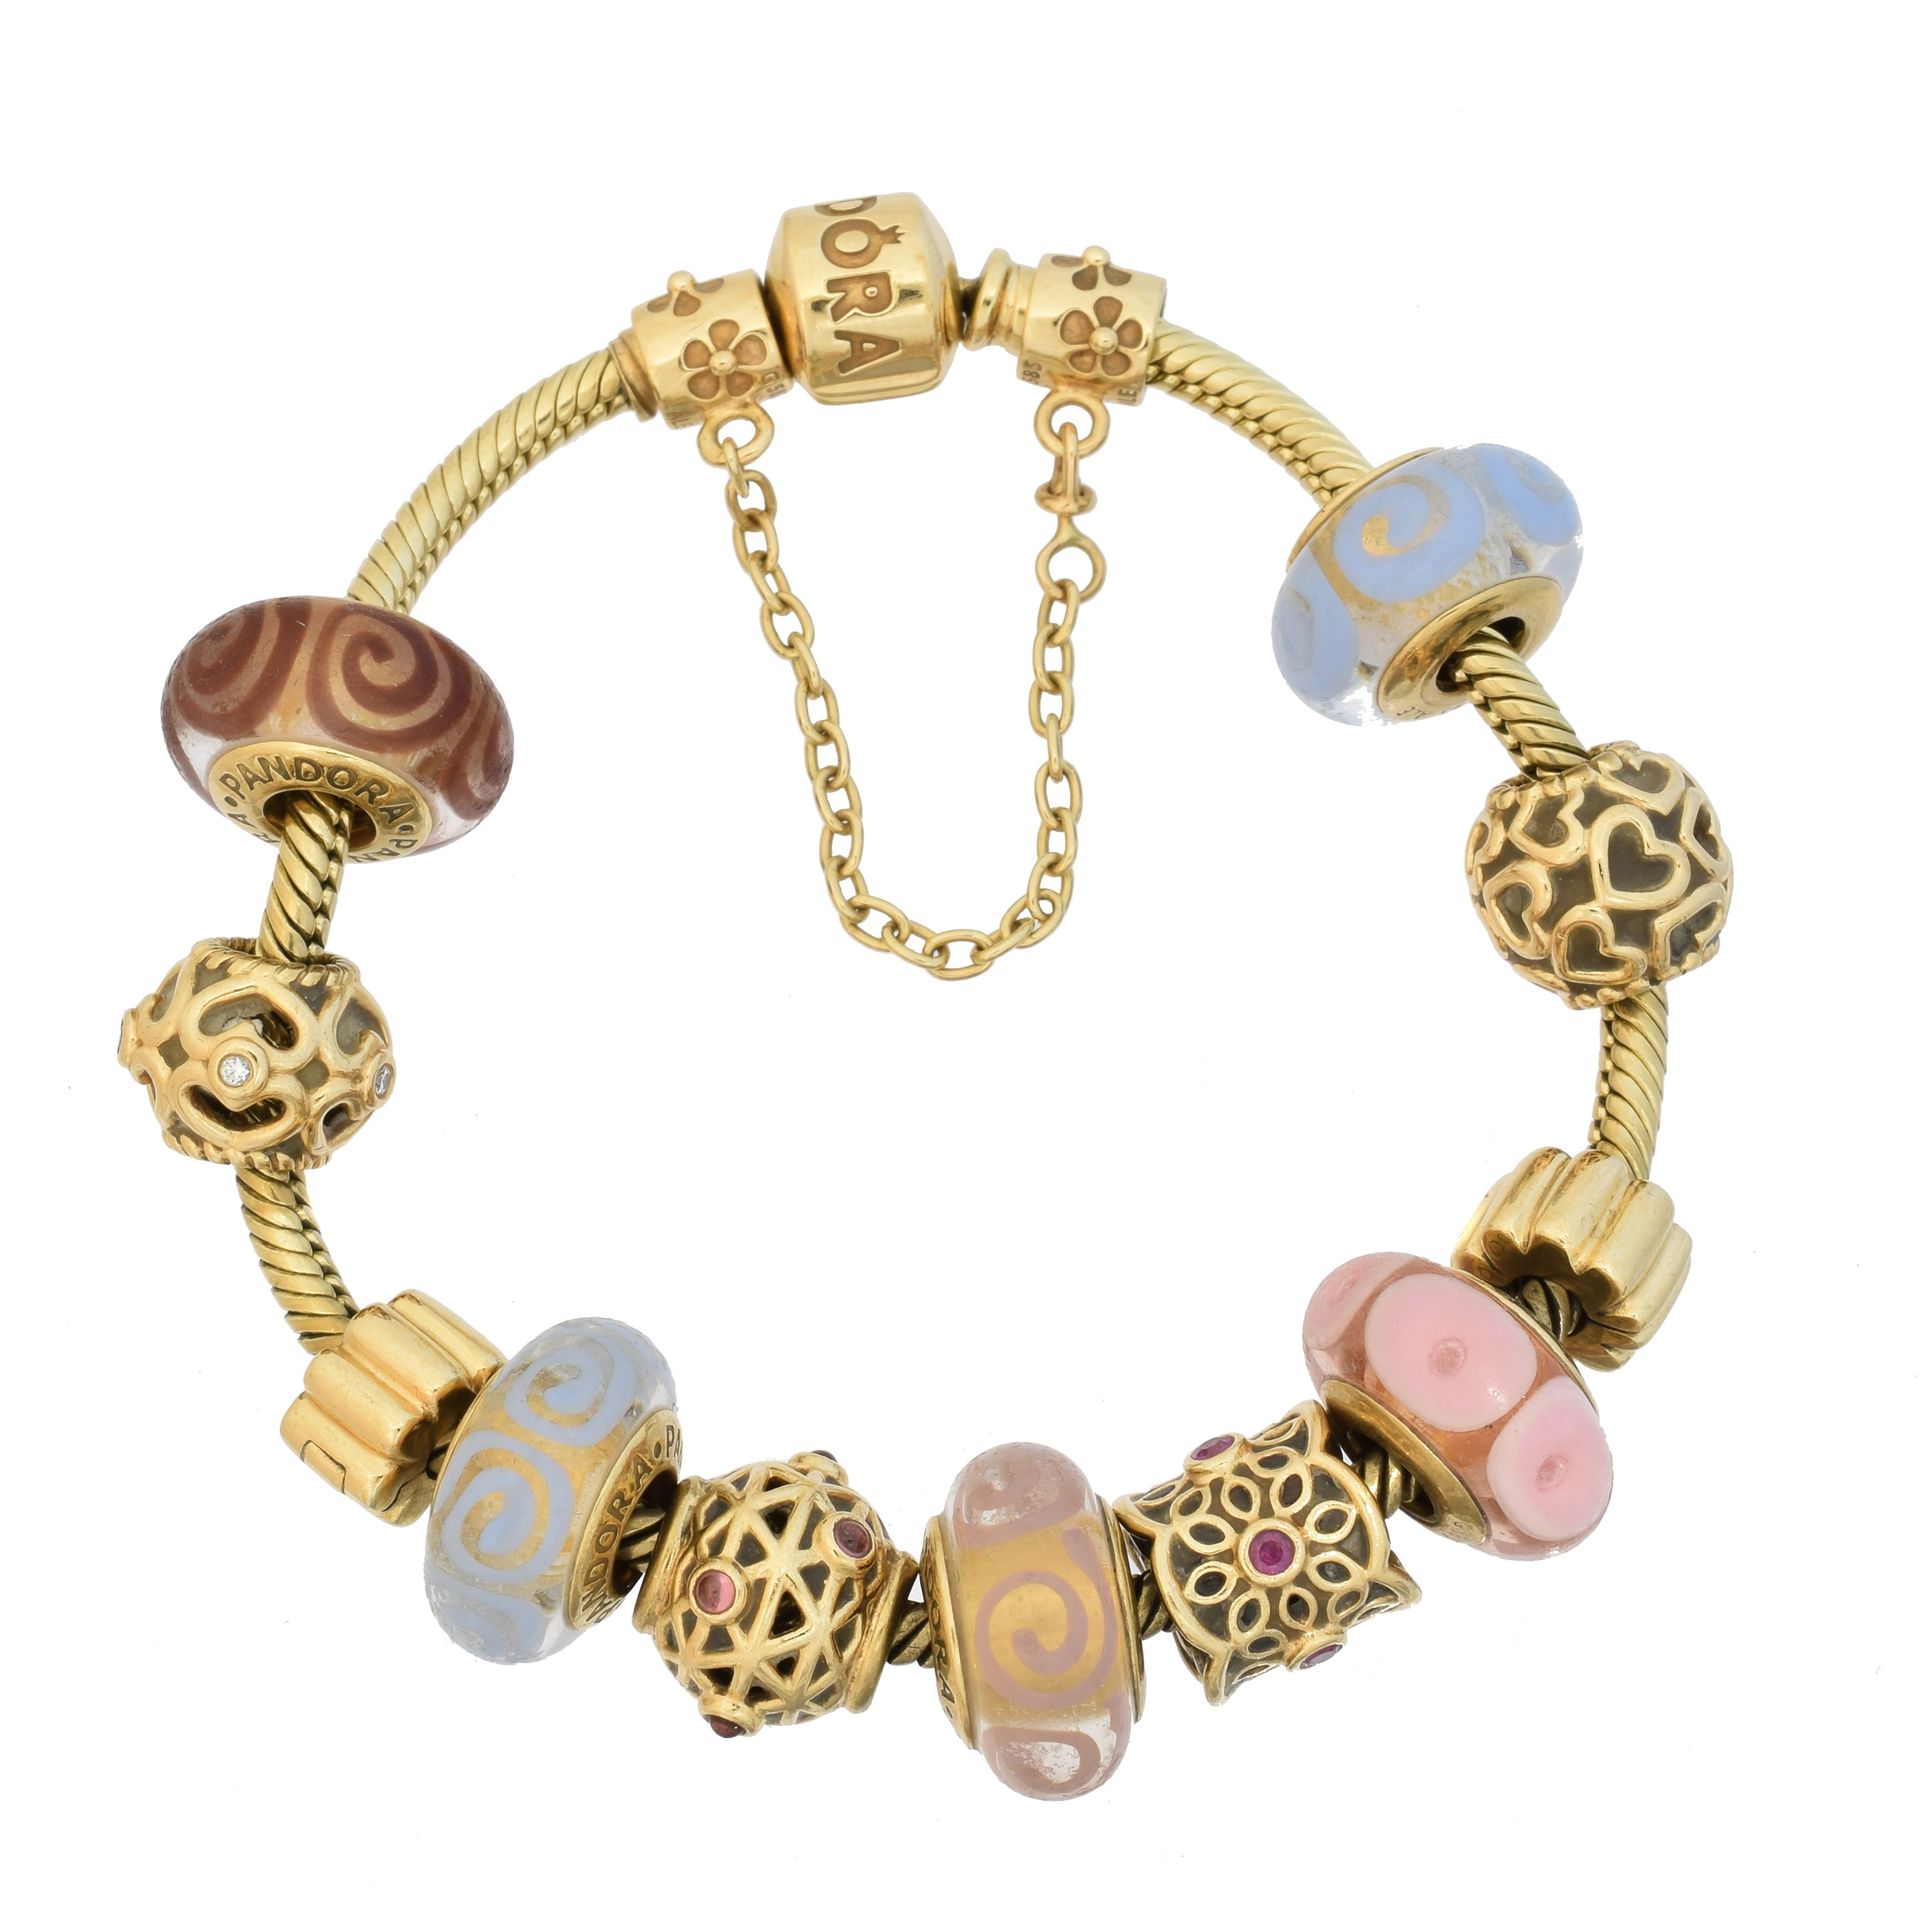 A 14ct gold Pandora charm bracelet, 
Un bracelet à breloques Pandora en or 14ct,&hellip;